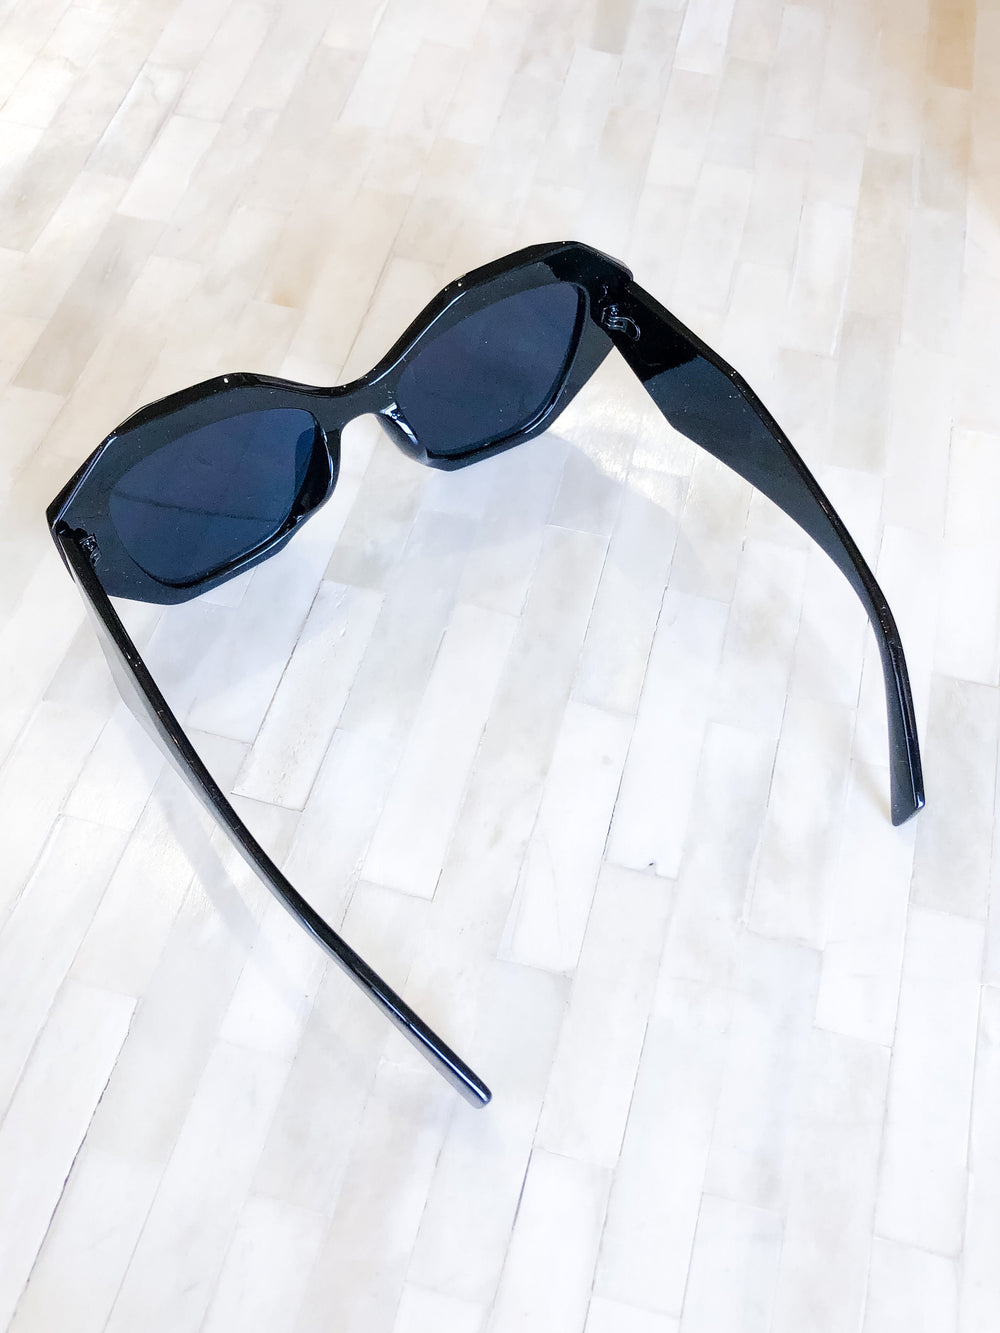 WS 600 Accessories - Shine On Black Sunglasses